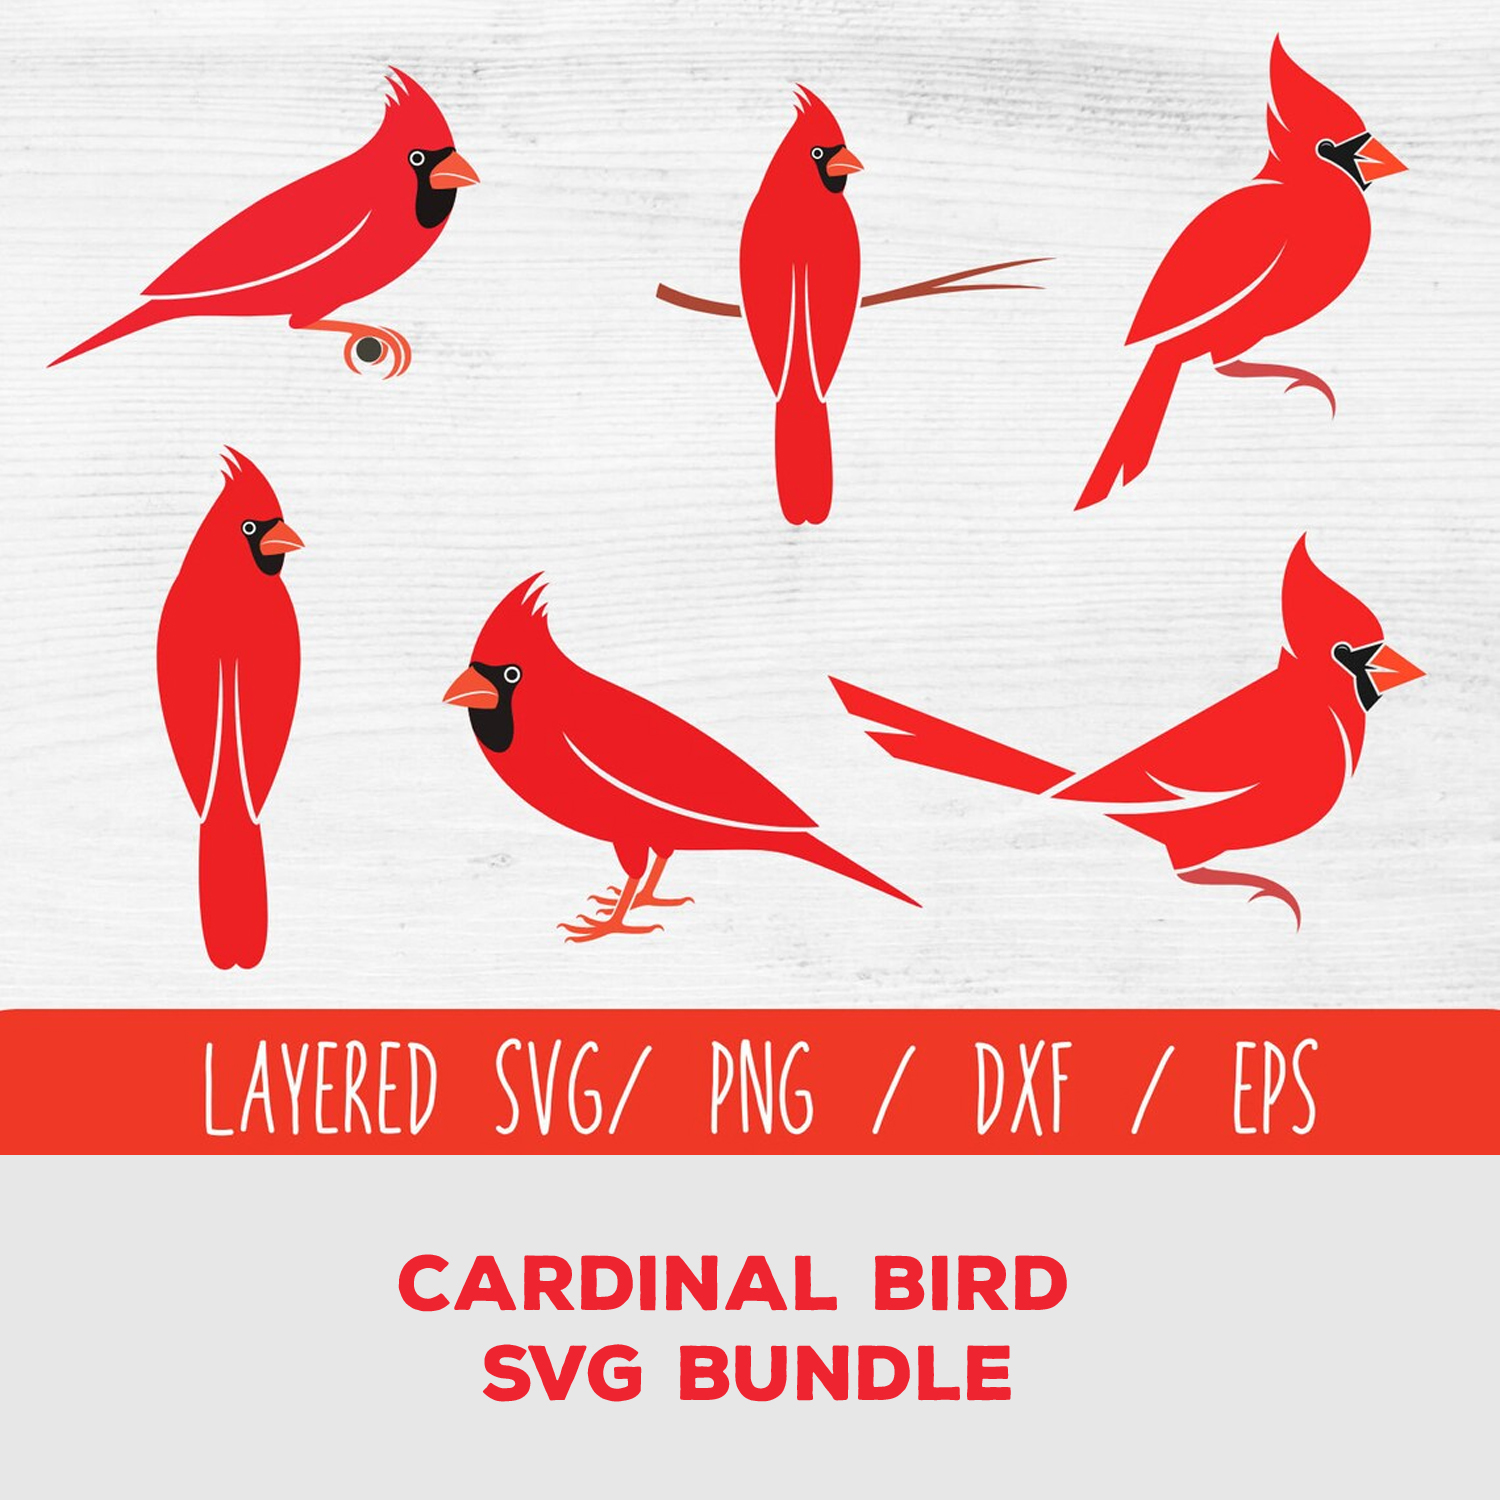 Cardinal bird svg bundle.